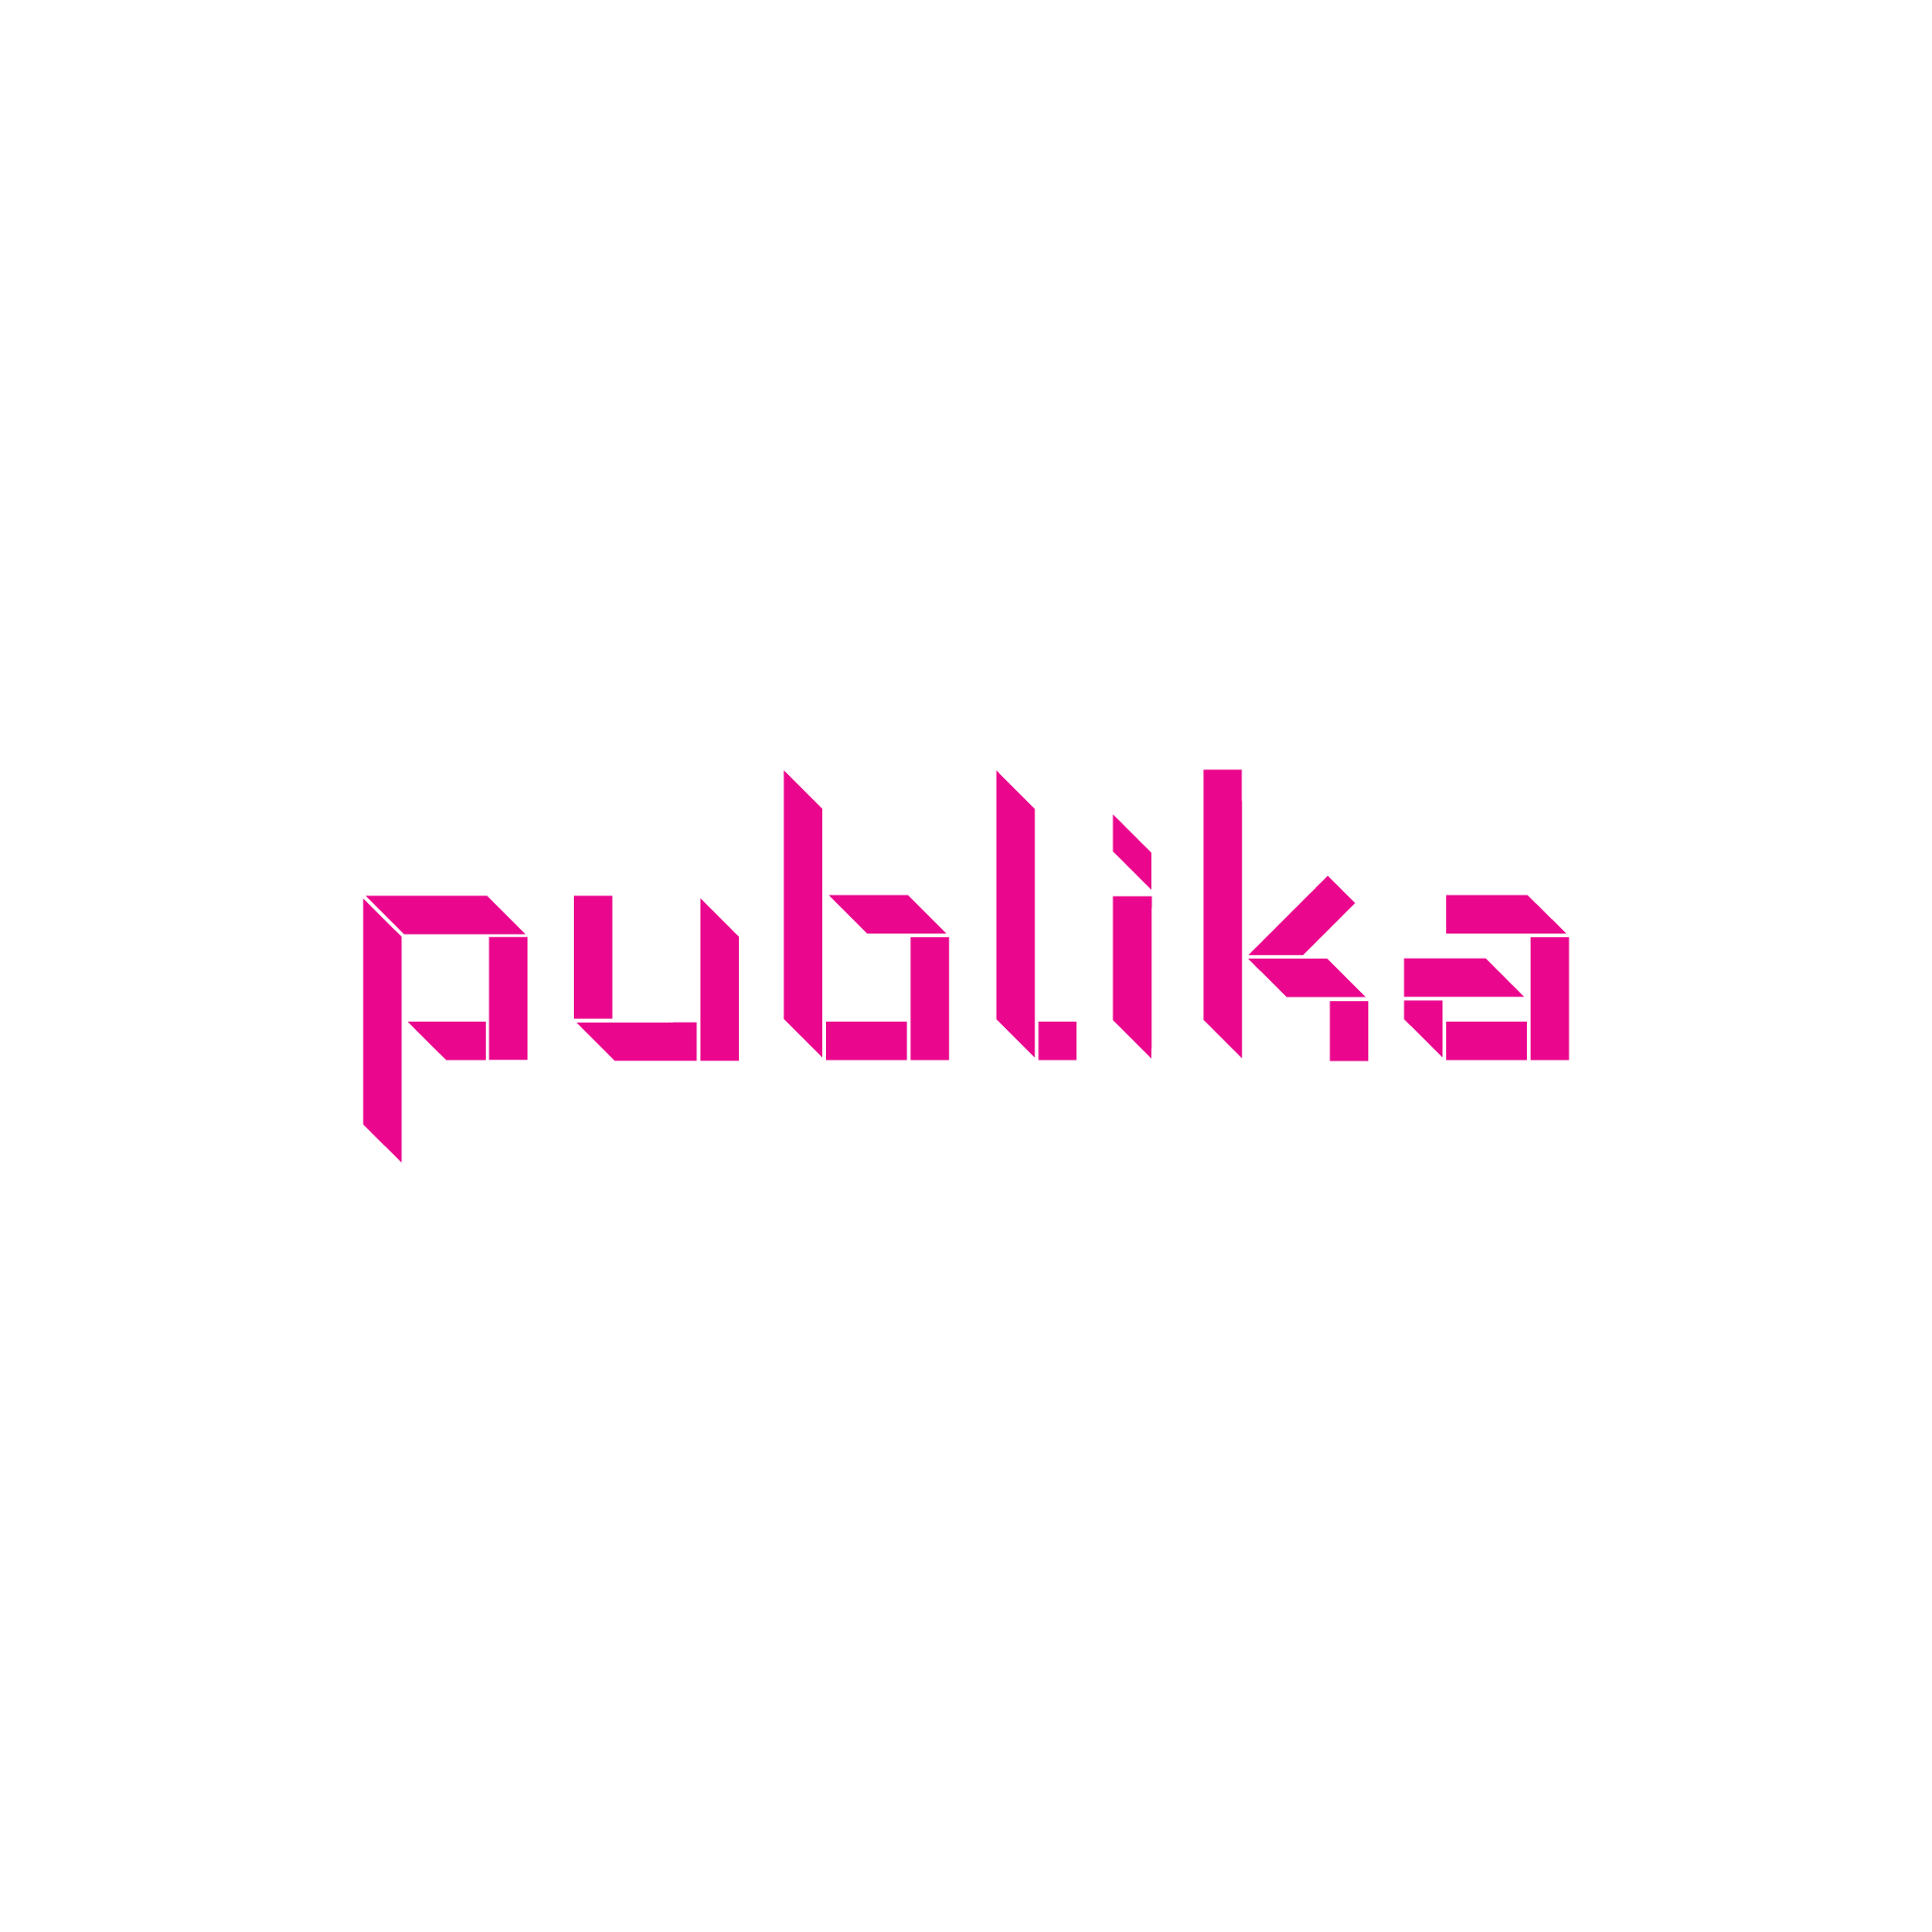 200219_ logo for website_Publika